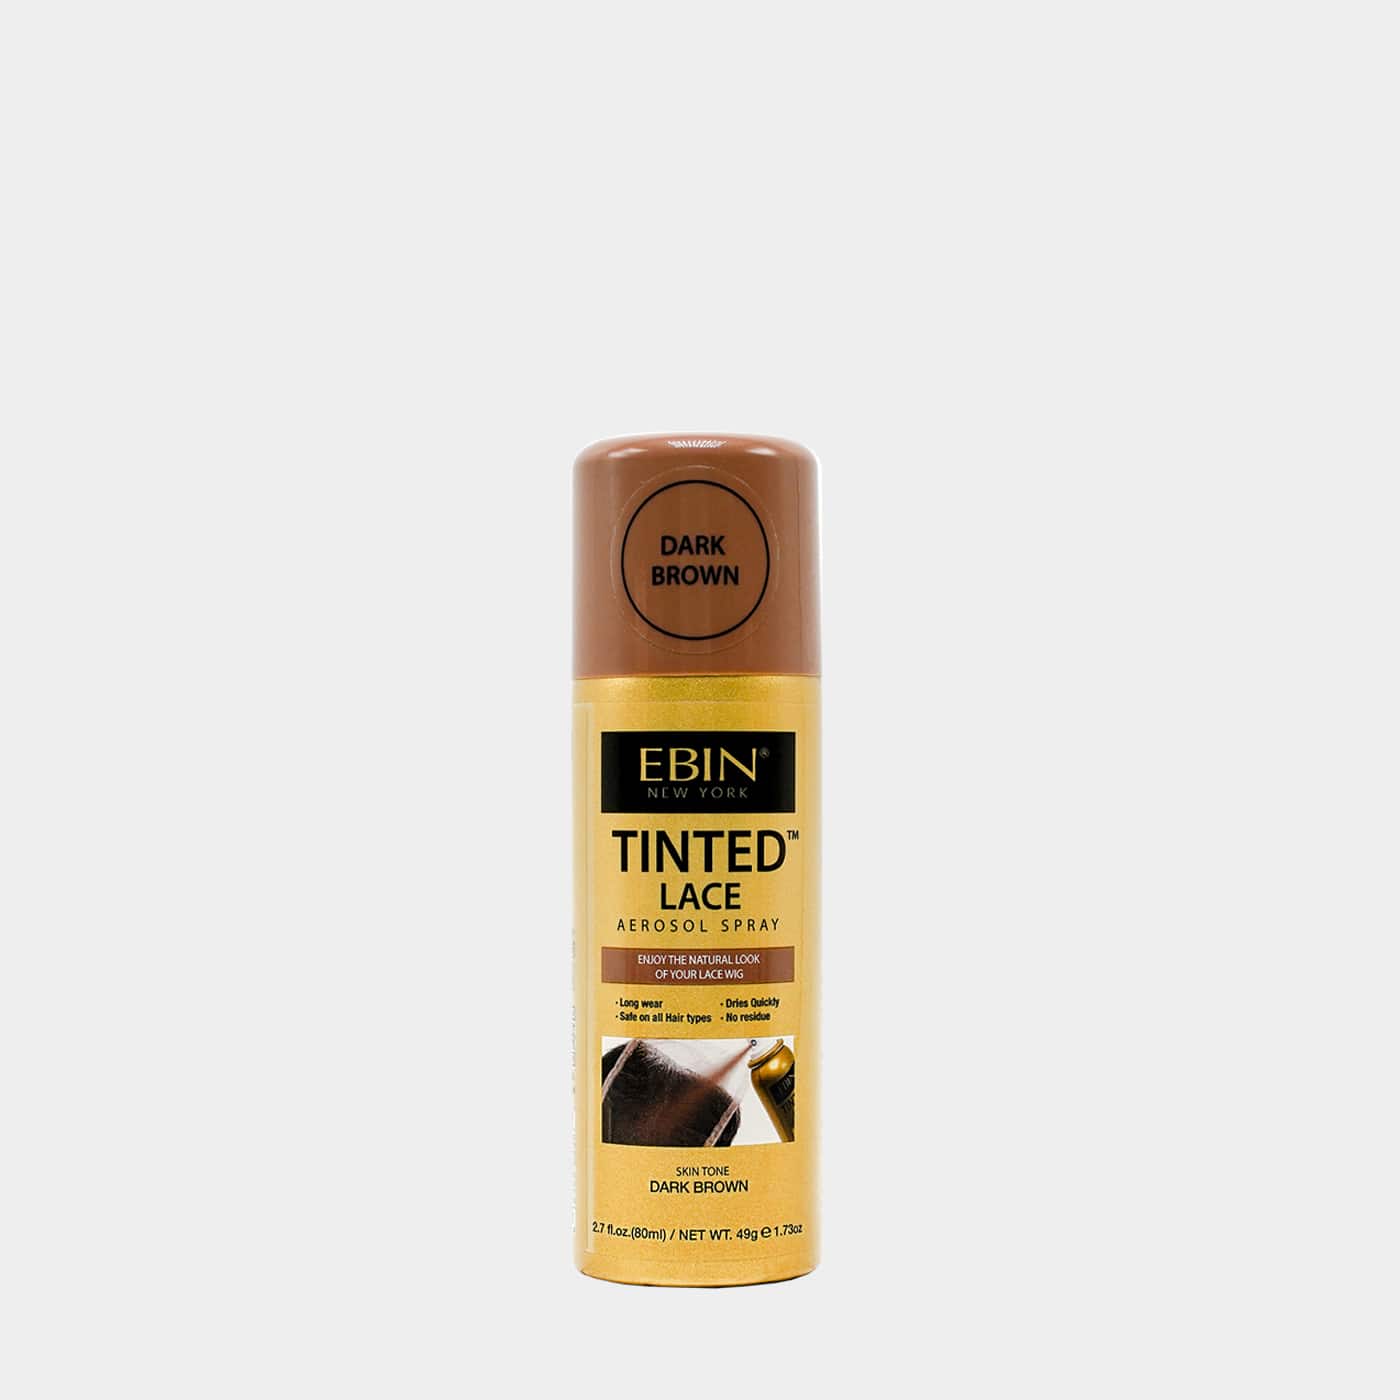 EBIN – Tinted Lace Aerosol Spray